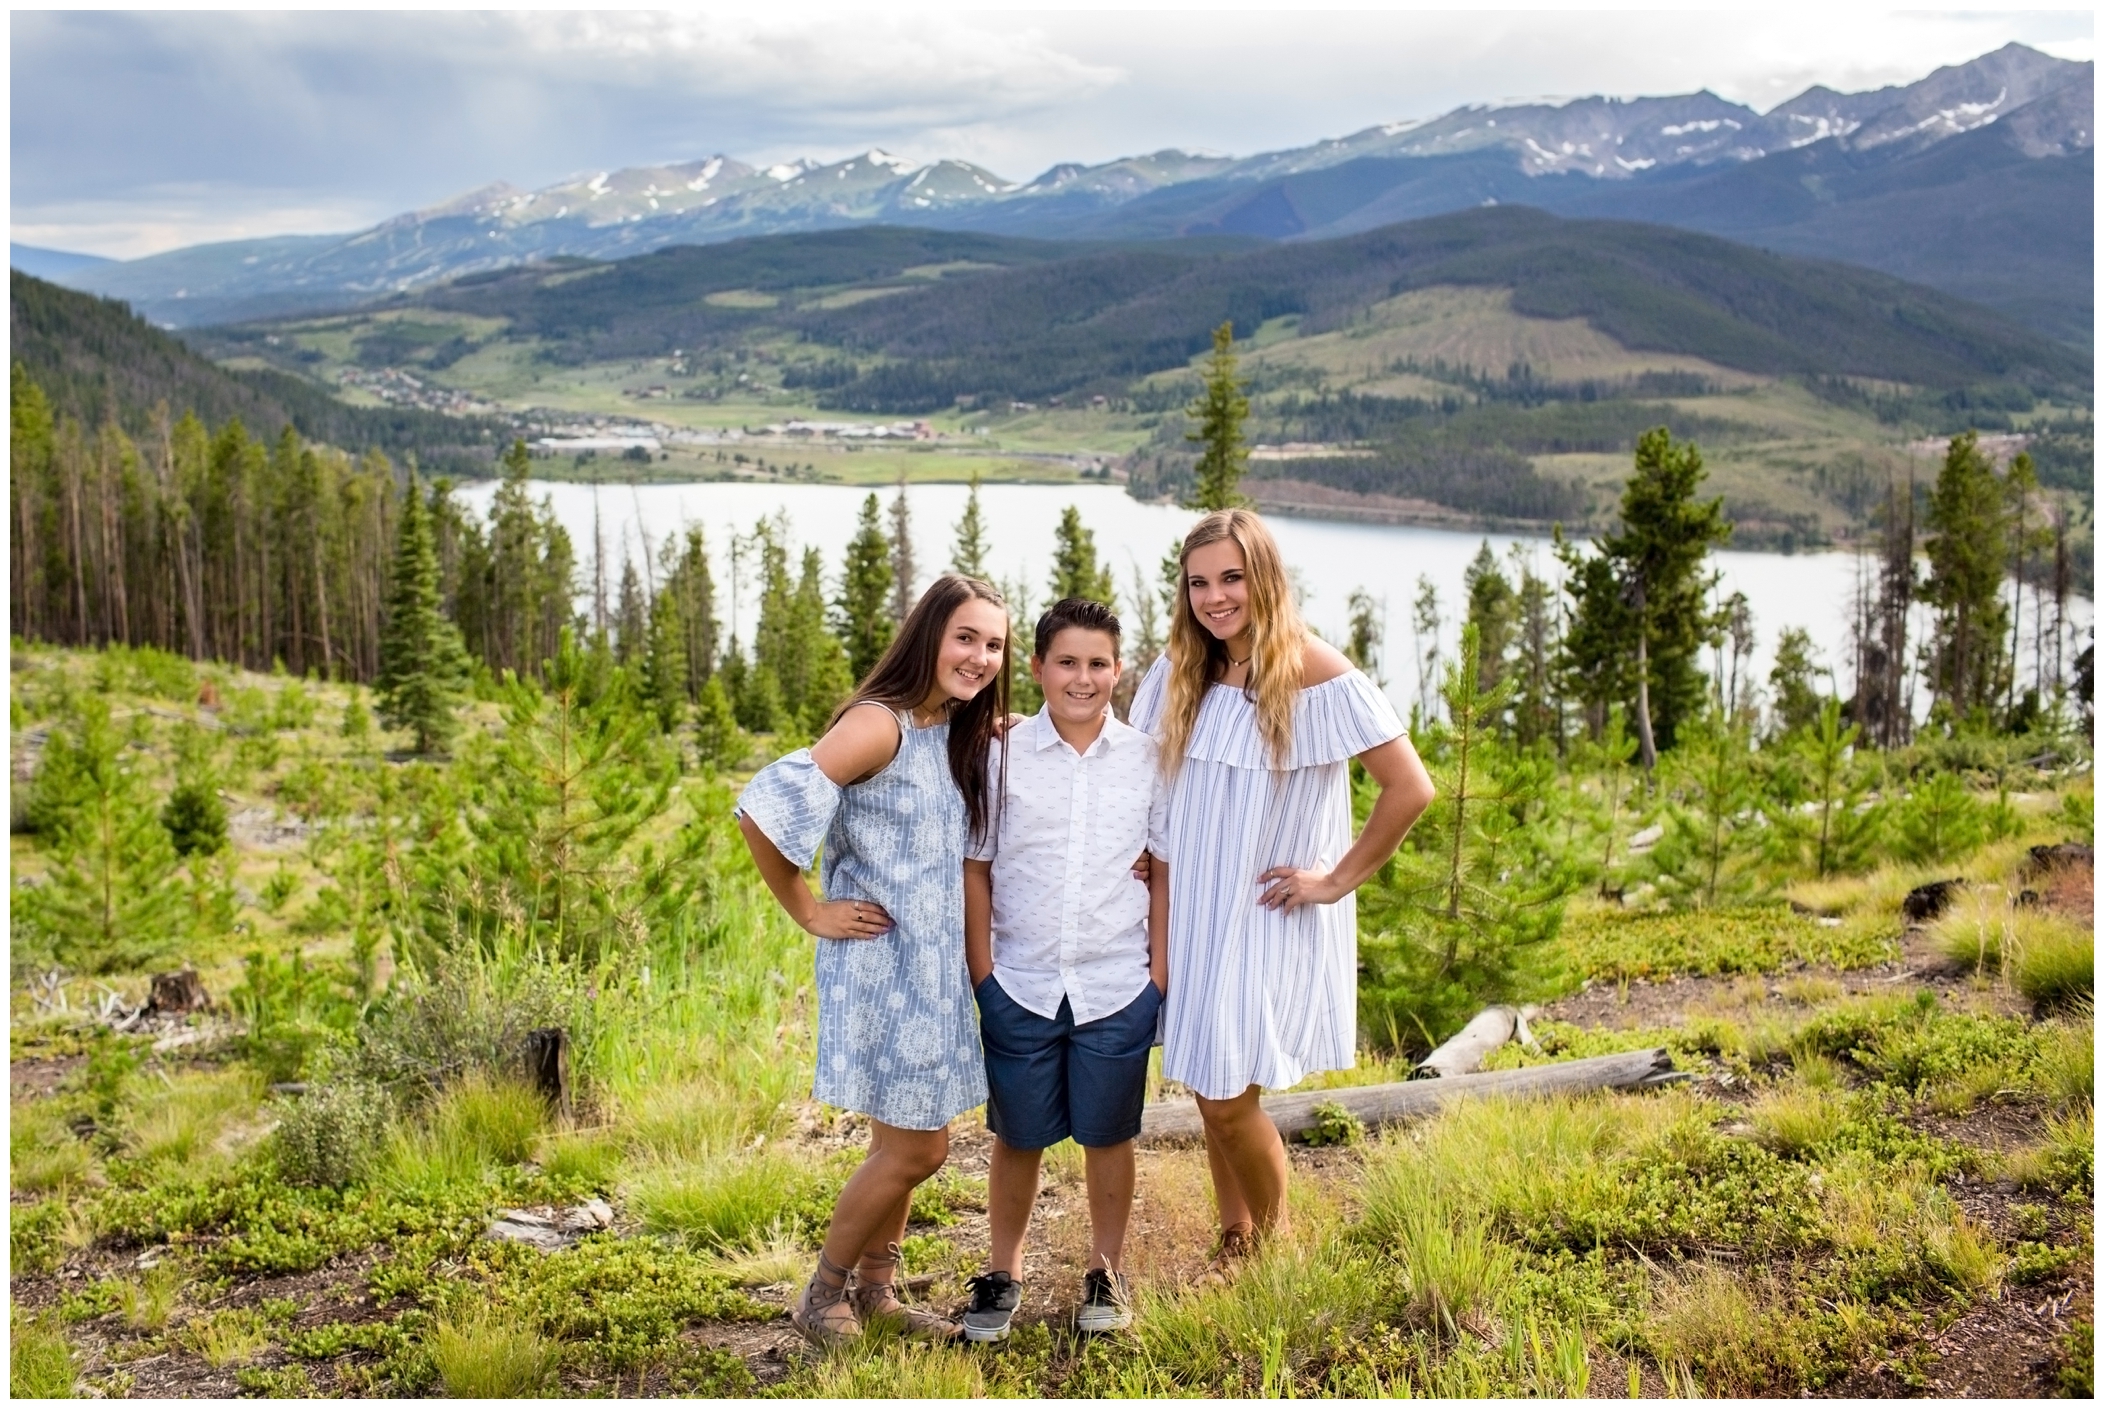 Breckenridge Colorado family portraits by Plum Pretty Photo 